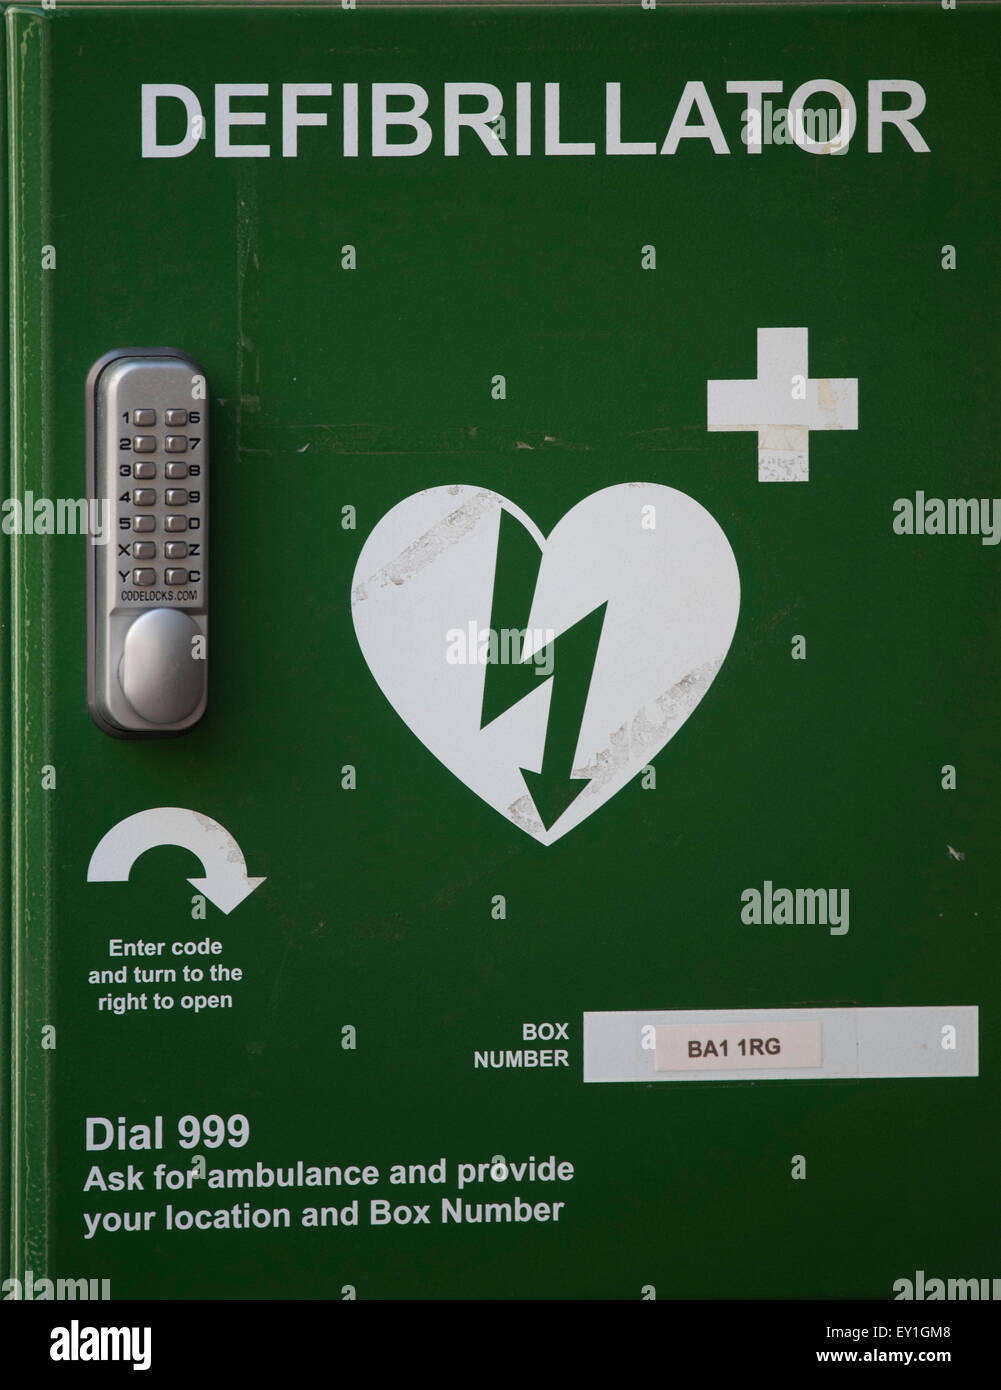 Ein Defibrillator-Zeichen. Defibrillatoren werden verwendet, um einen unregelmäßigen Herzschlag zu stabilisieren. und finden sich oft in den öffentlichen Bereichen. Stockfoto